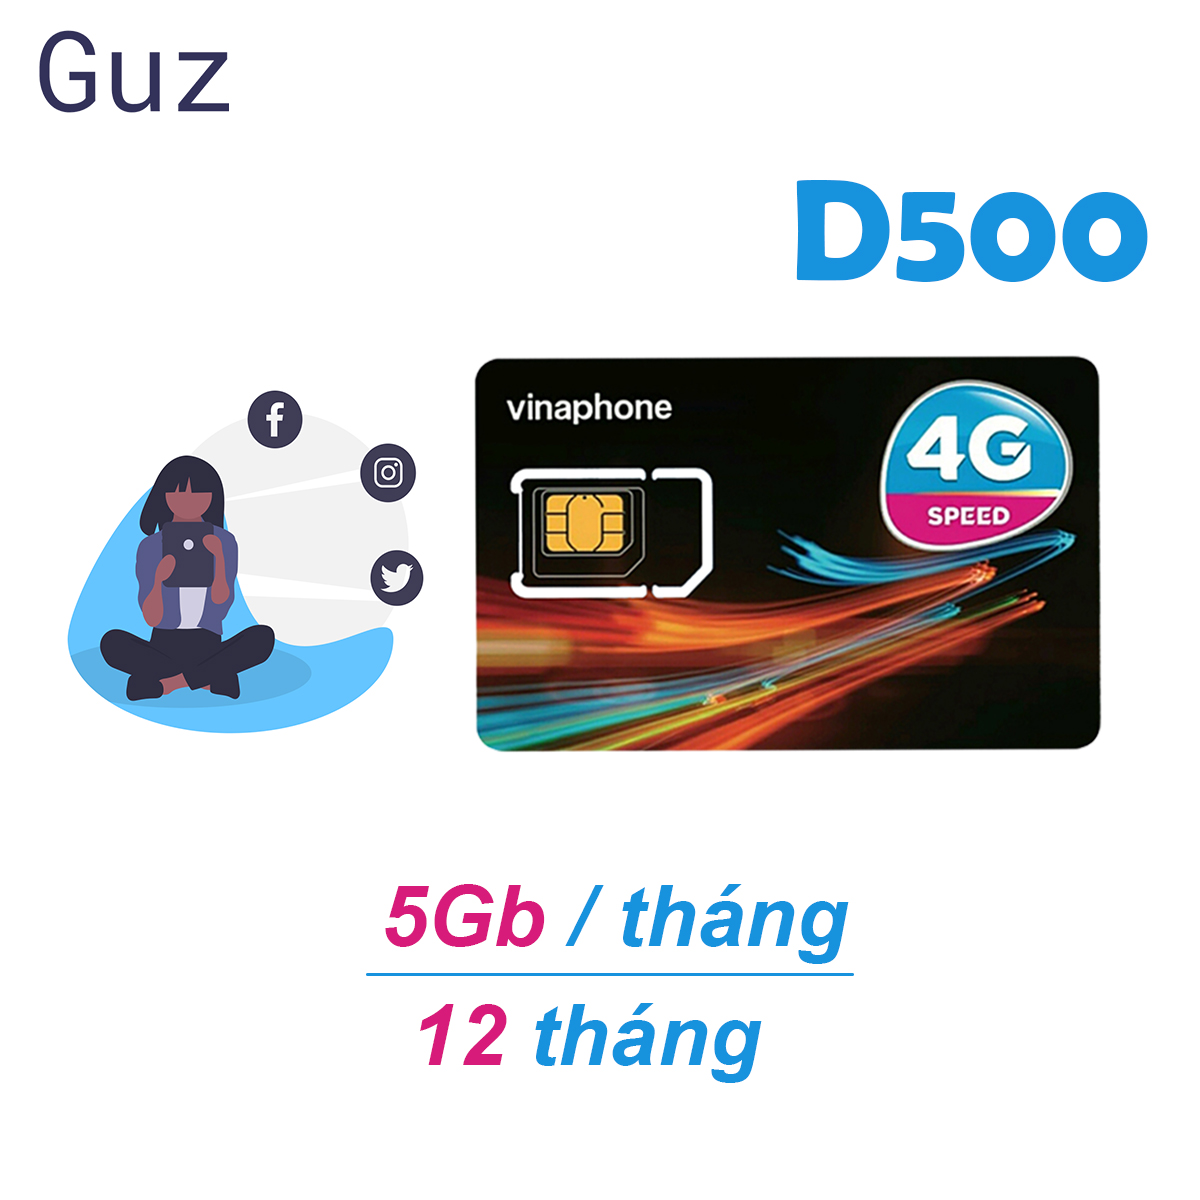 sim 4G Vinaphone trọn gói 1 năm không nạp tiền gói D500vina có 5Gb/tháng x 12 tháng.Miễn phí 12 tháng